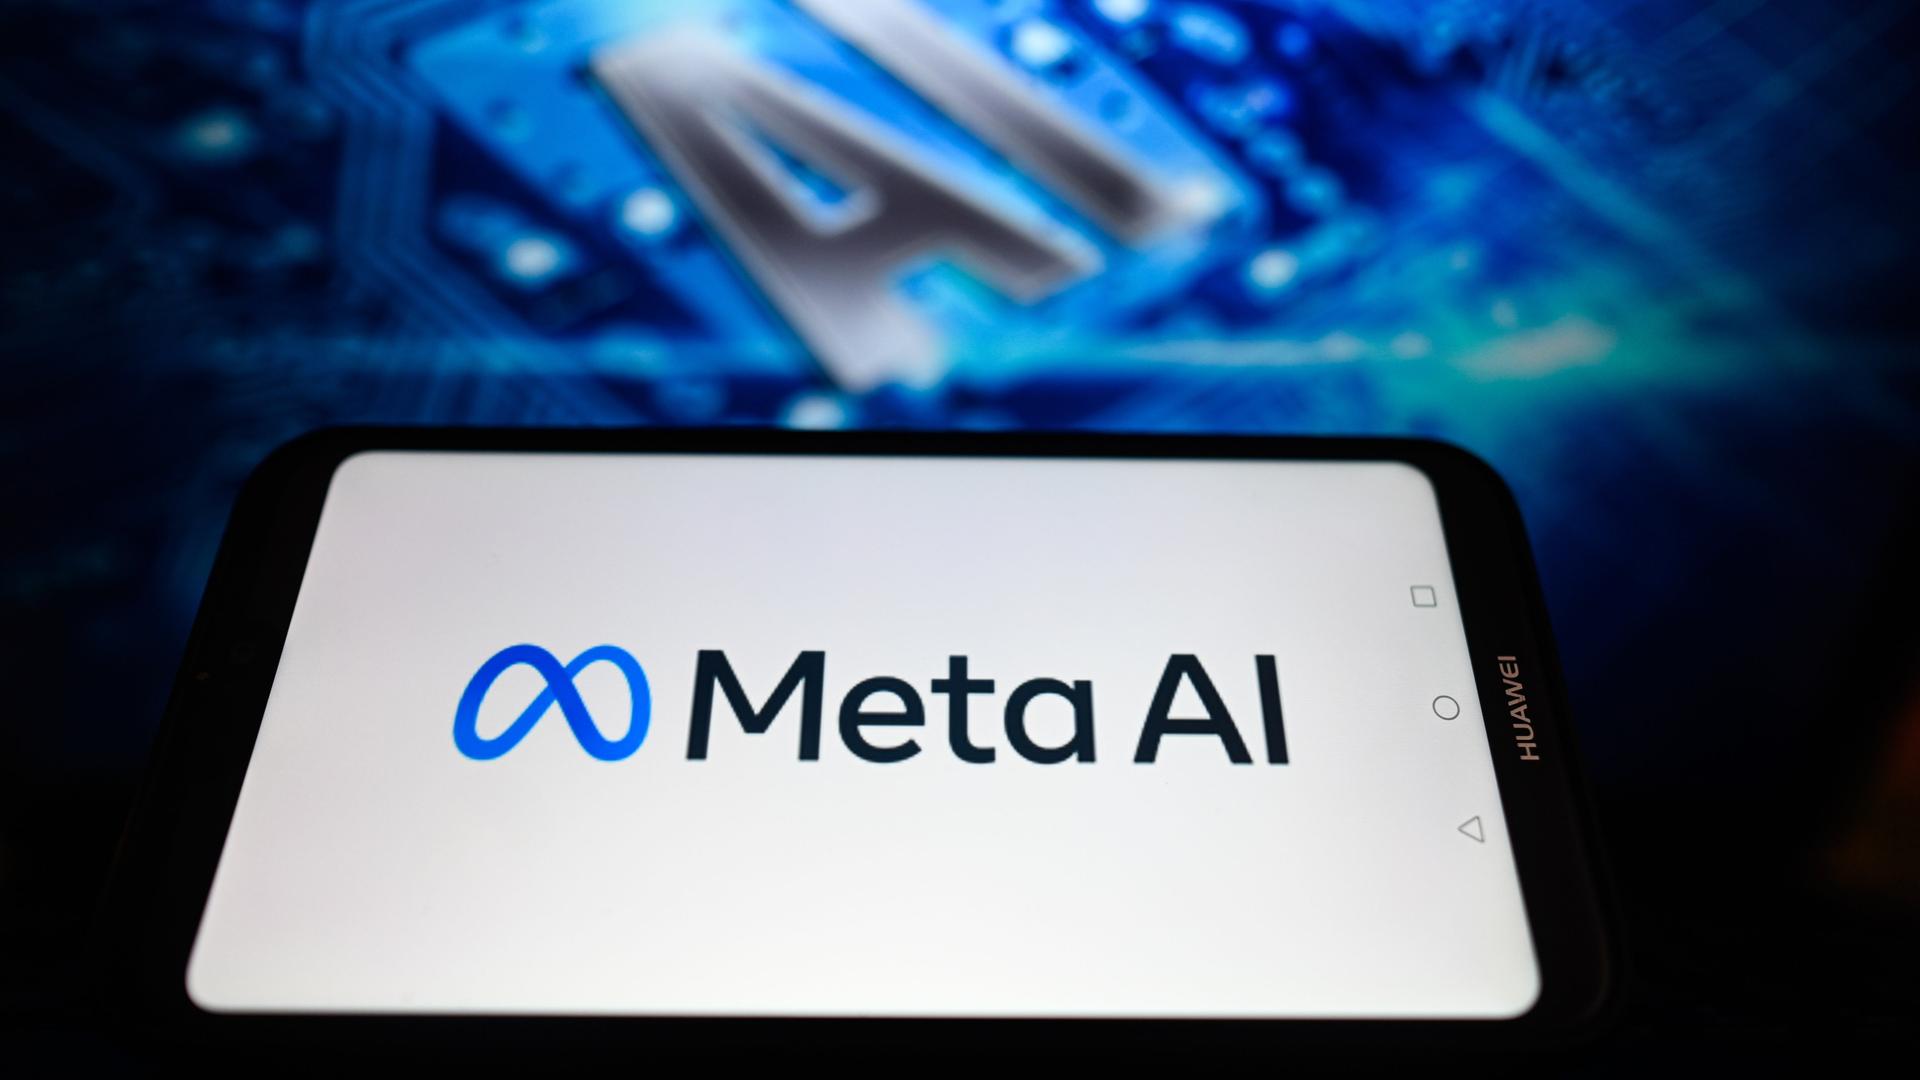 Auf der Illustration wird das Logo des Facebook-Konzerns Meta und der Schriftzug Meta AI auf einem Smartphone angezeigt. Im Hintergrund etwas unscharf die Buchstaben "AI"